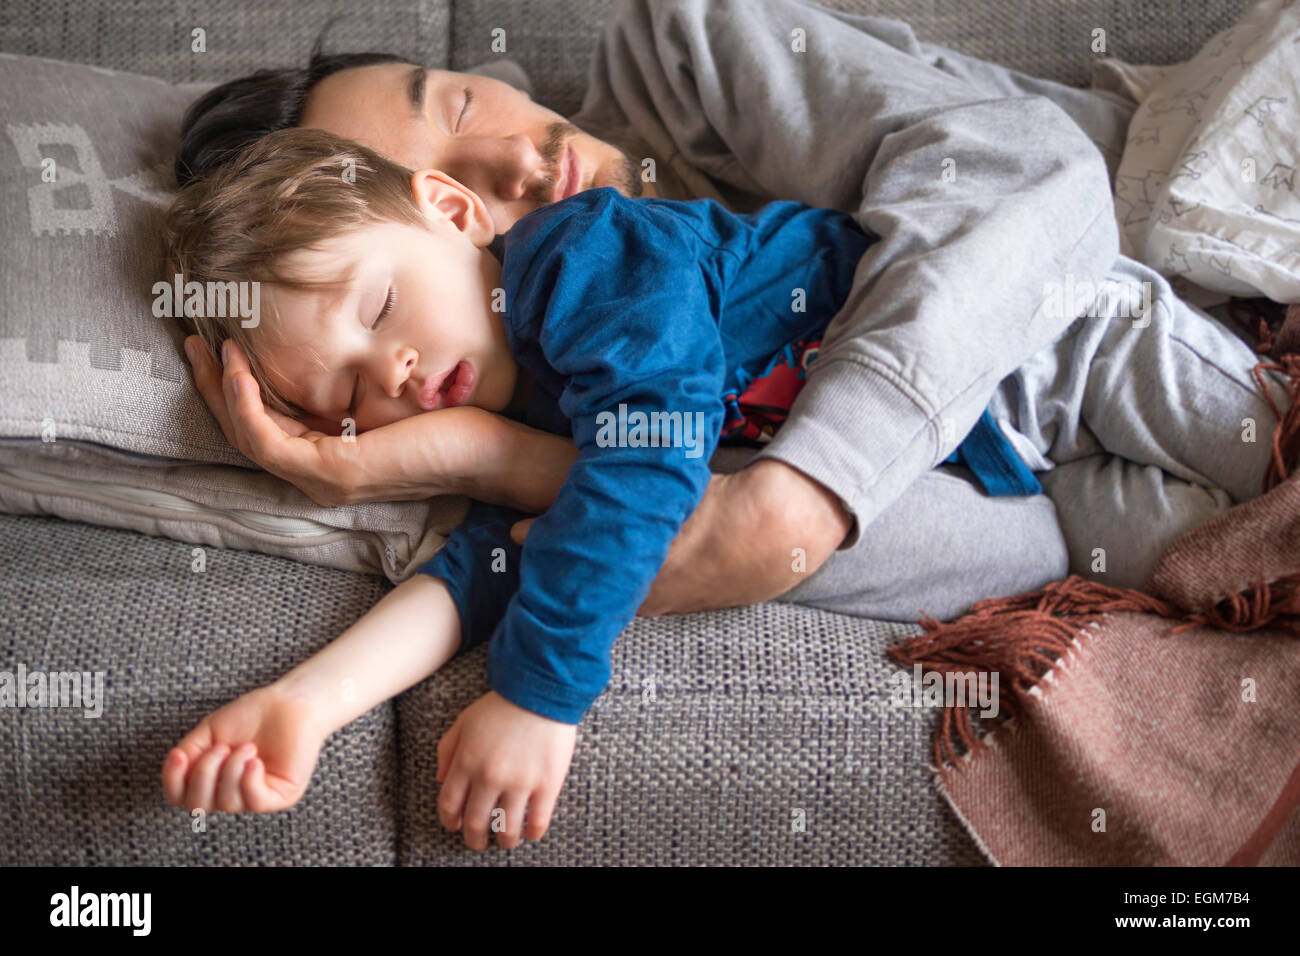 Ritratto di padre e figlio addormentati insieme sul lettino Foto Stock